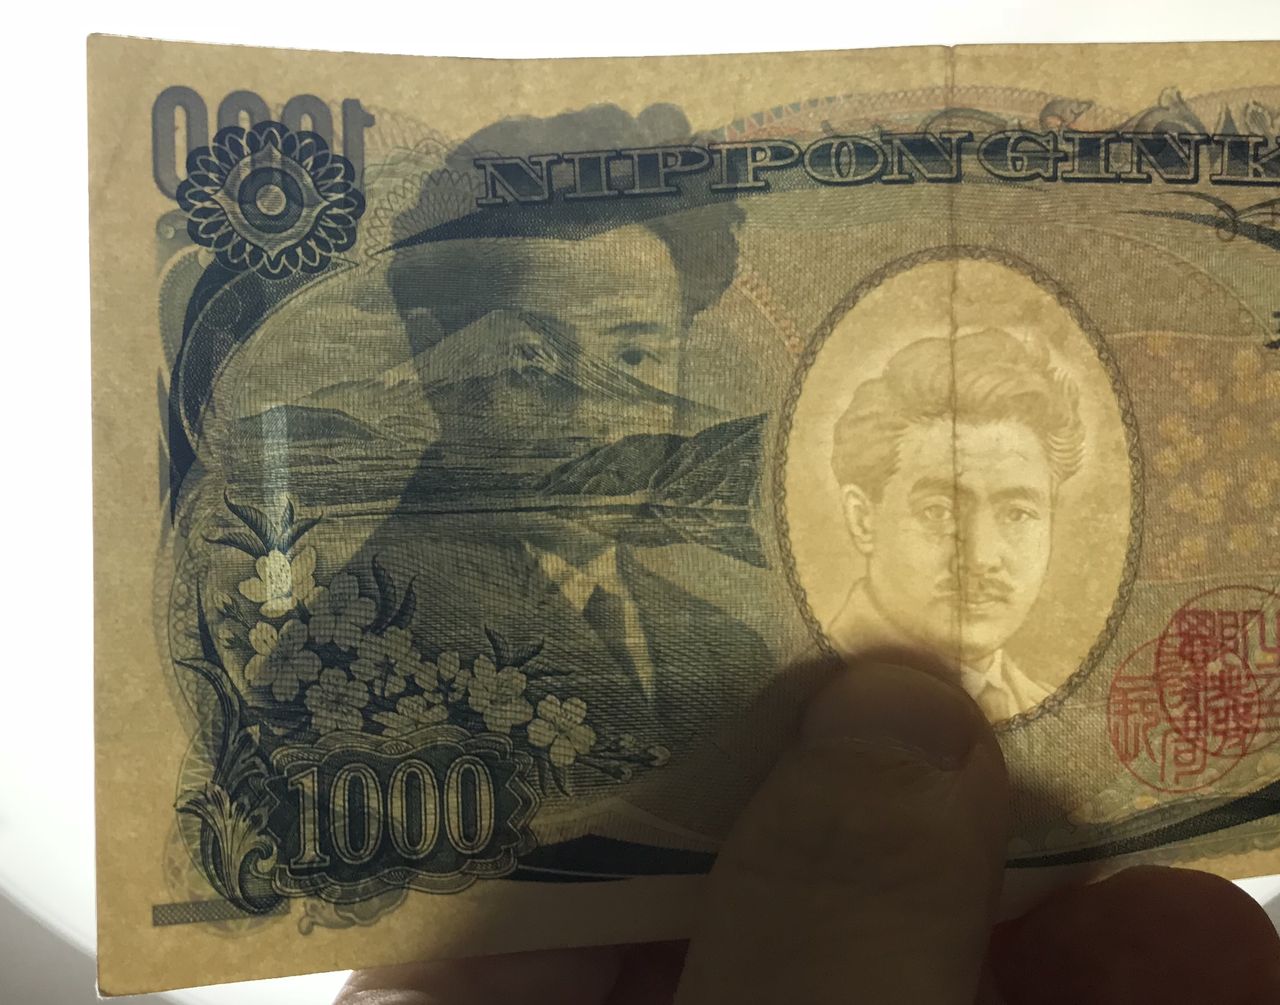 知らなかった 千円札に隠された 衝撃的な秘密 が話題に １ドル札と